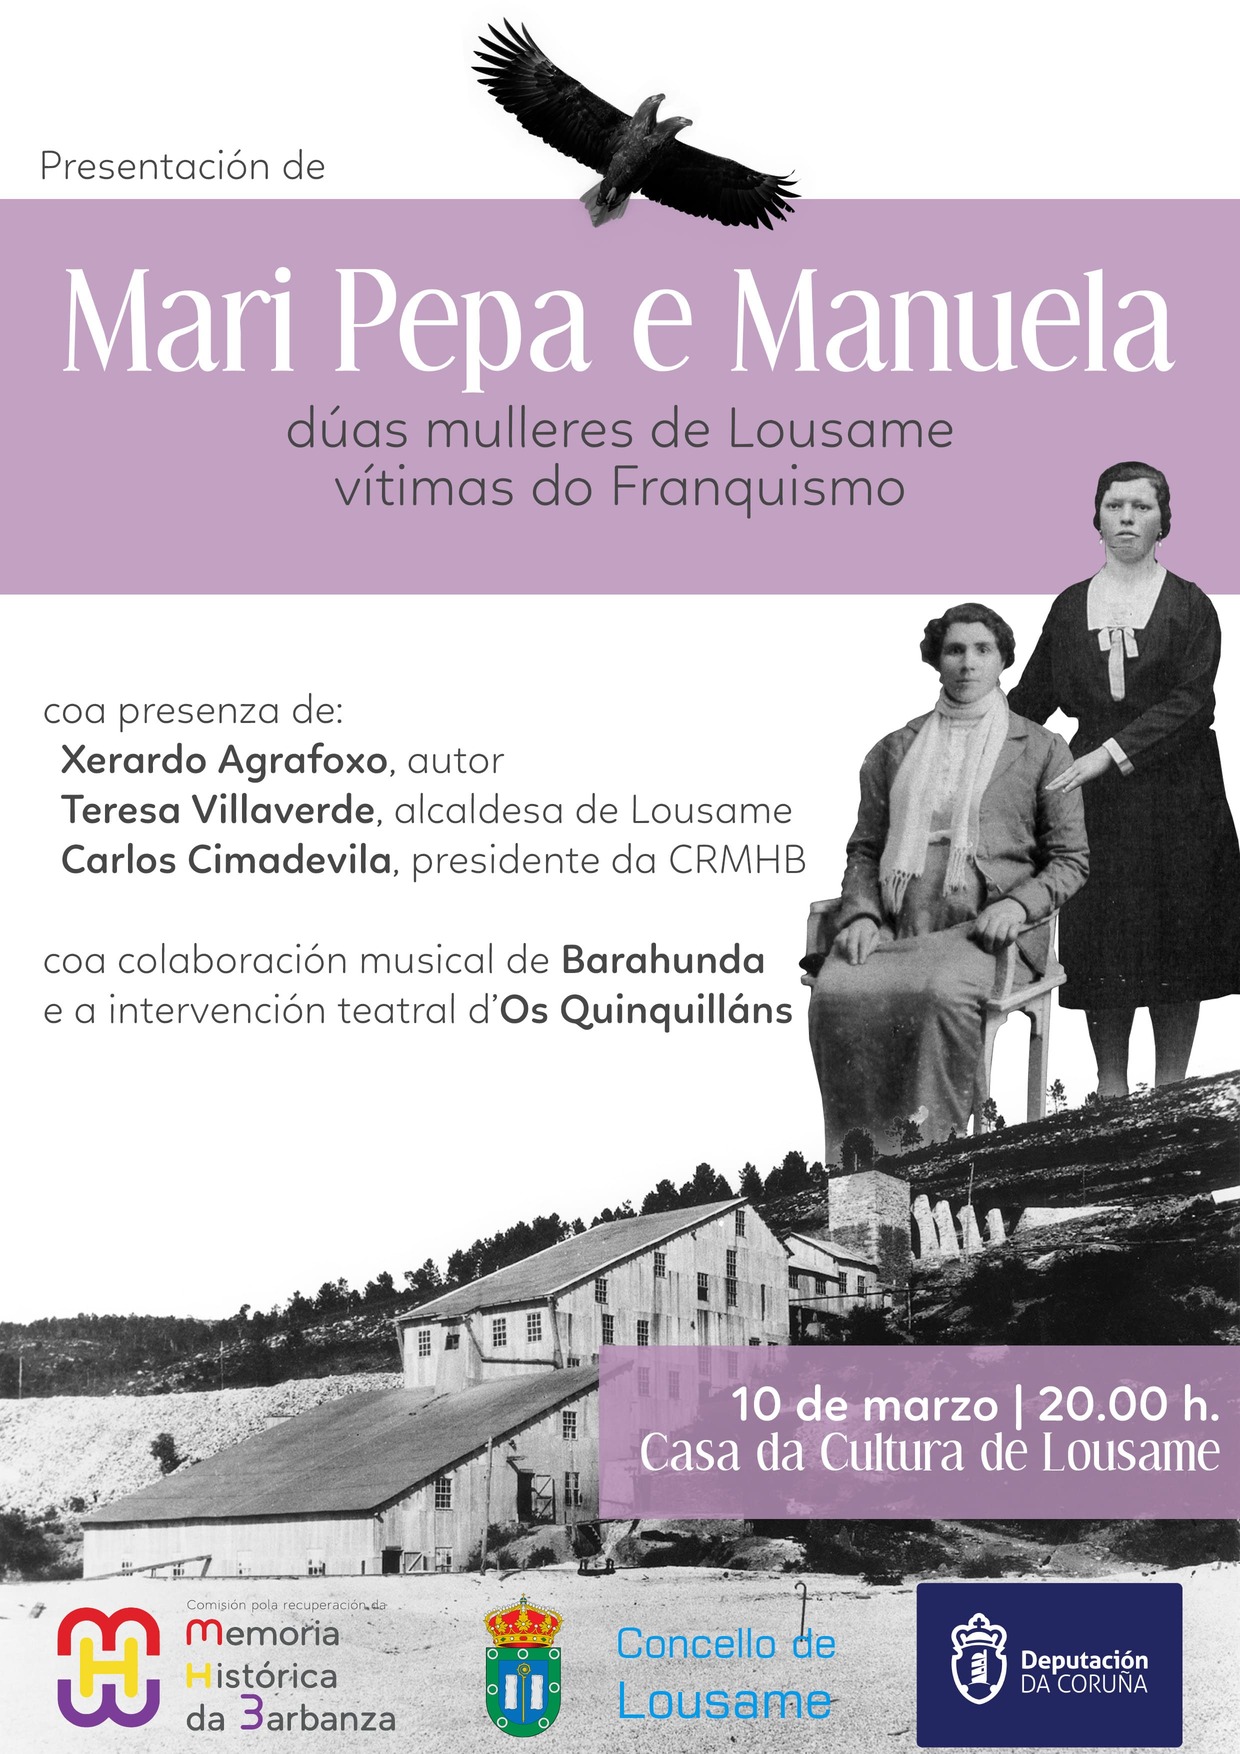 Mari Pepa e Manuela: dúas mulleres de Lousame vítimas do Franquismo